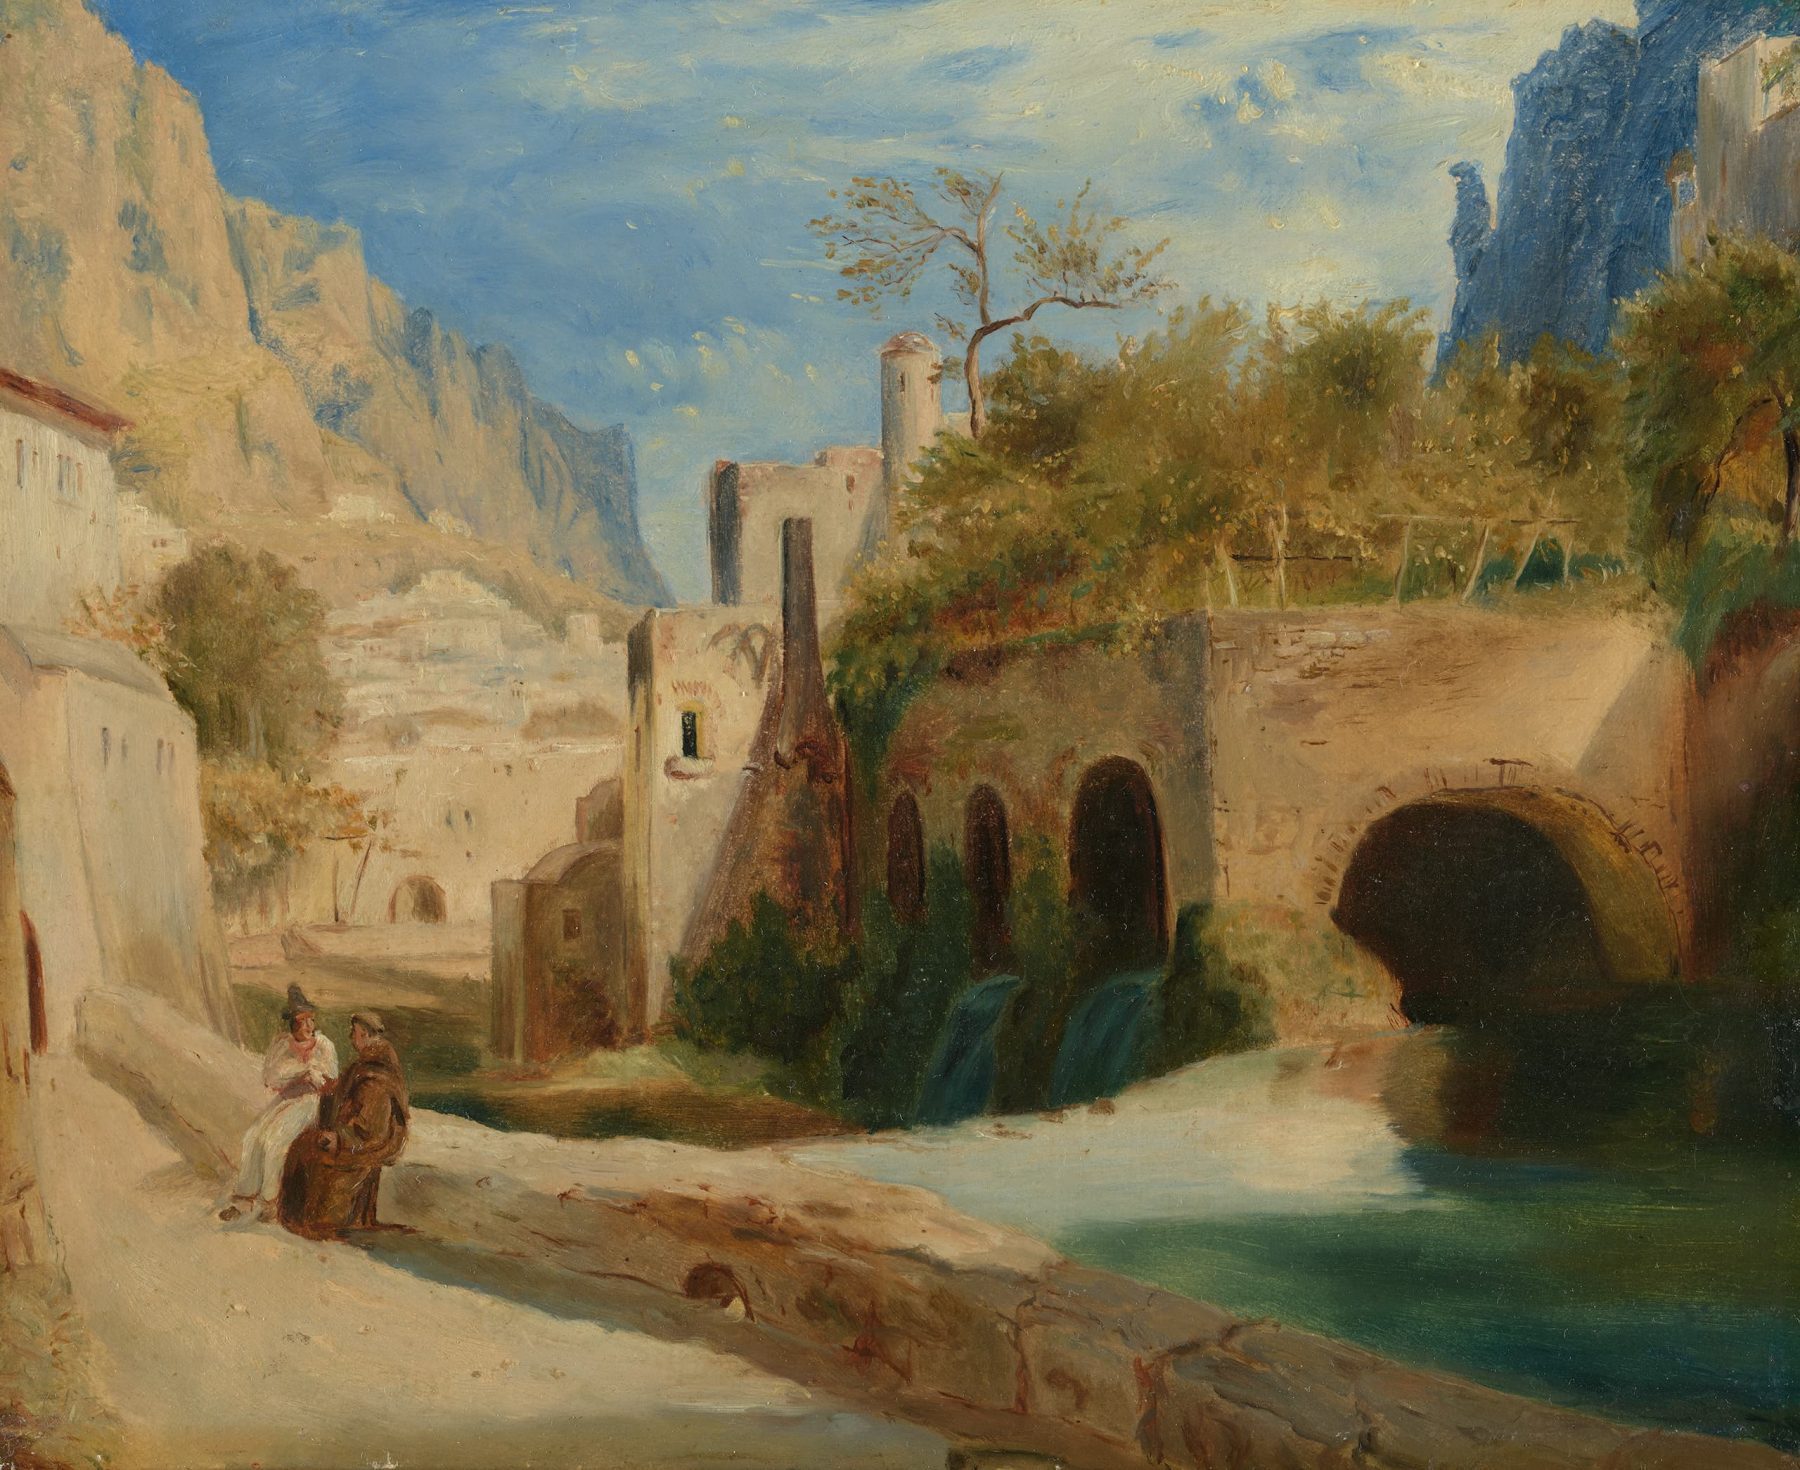 Eine helle Landschaft mit Gemäuern, einem Fluss in der Mitte und zwei Personen, die links neben dem Fluss auf einer Mauer sitzen.